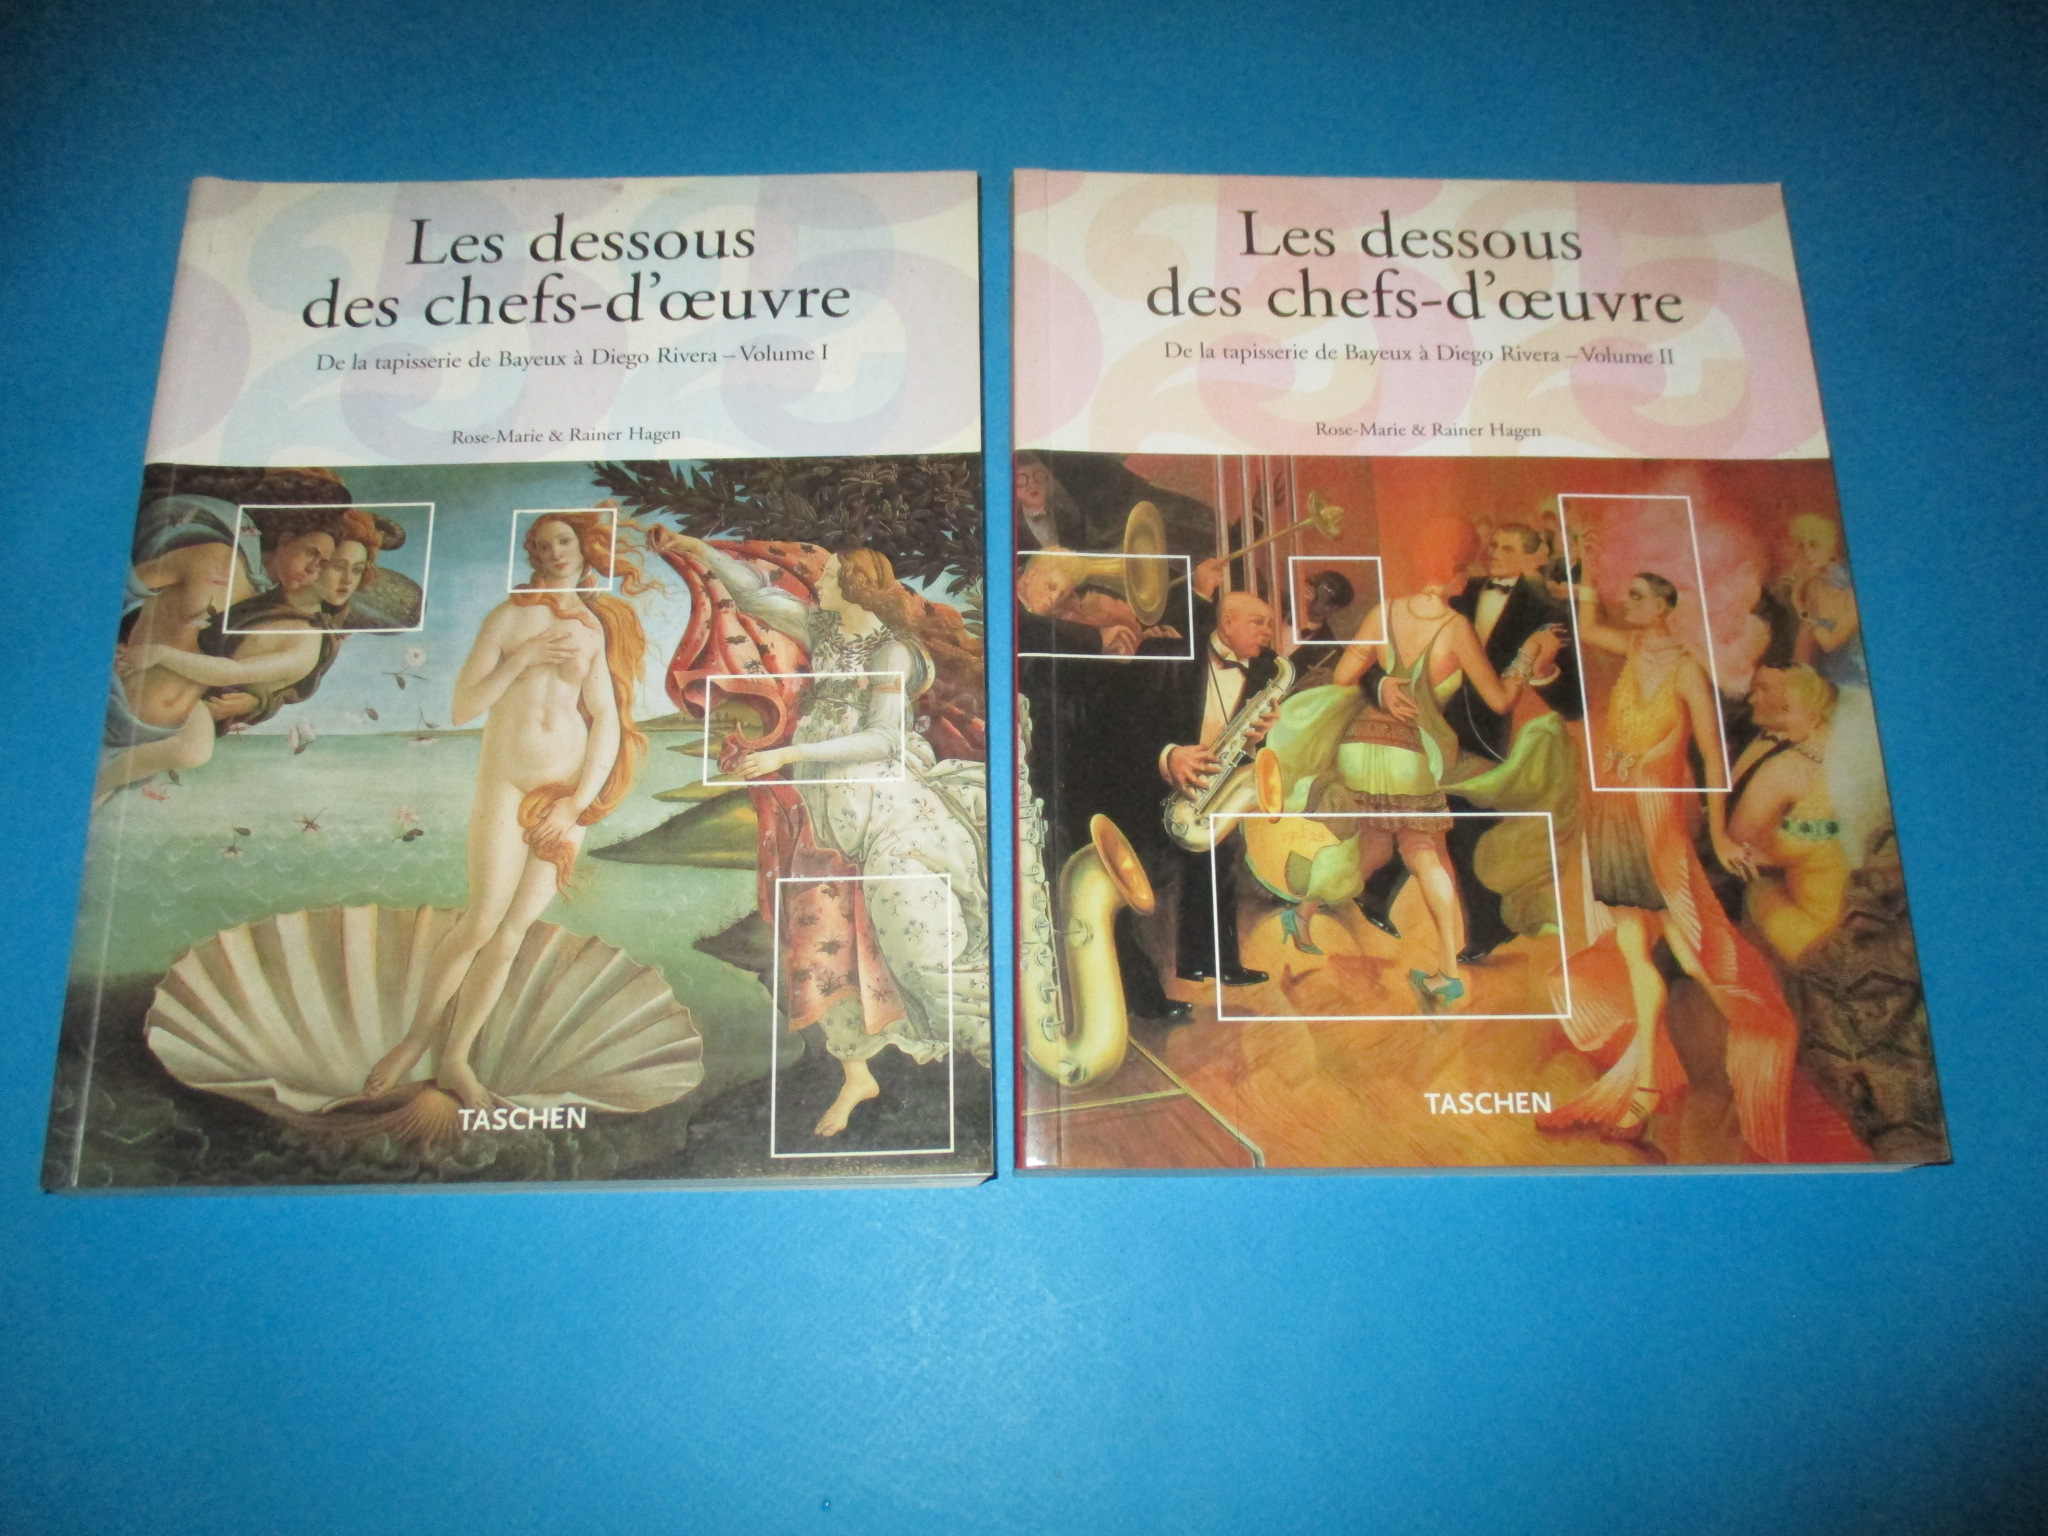 Les dessous des chefs-d\'oeuvre en 2 volumes, De la tapisserie de Bayeux à Diego Rivera, Rose-Marie & Rainer Hagen, Taschen